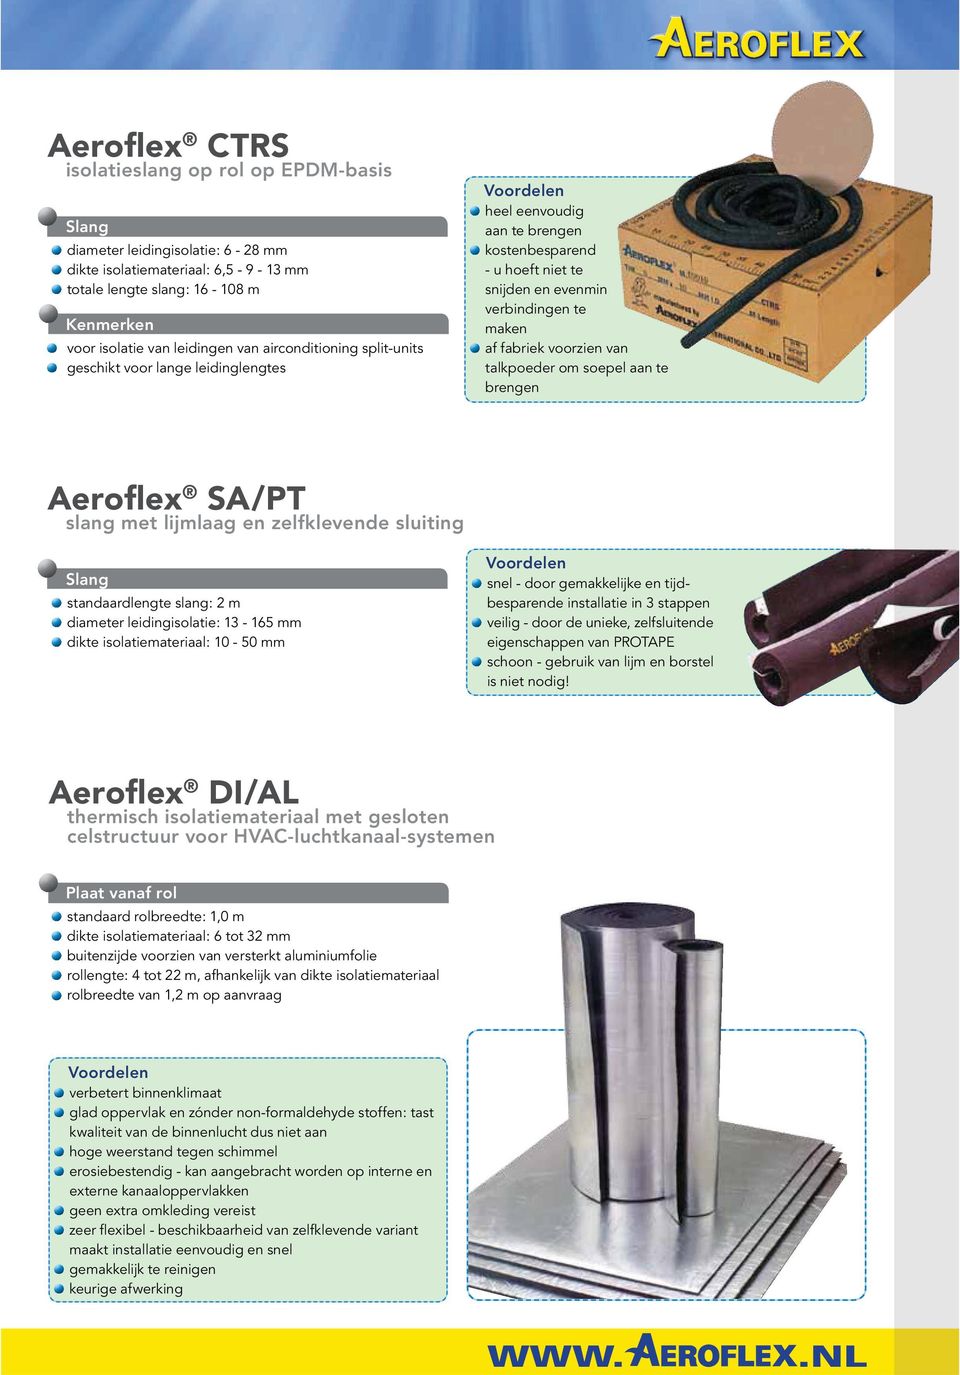 talkpoeder om soepel aan te brengen Aeroflex SA/PT slang met lijmlaag en zelfklevende sluiting standaardlengte slang: 2 m diameter leidingisolatie: 13-165 mm dikte isolatiemateriaal: 10-50 mm snel -